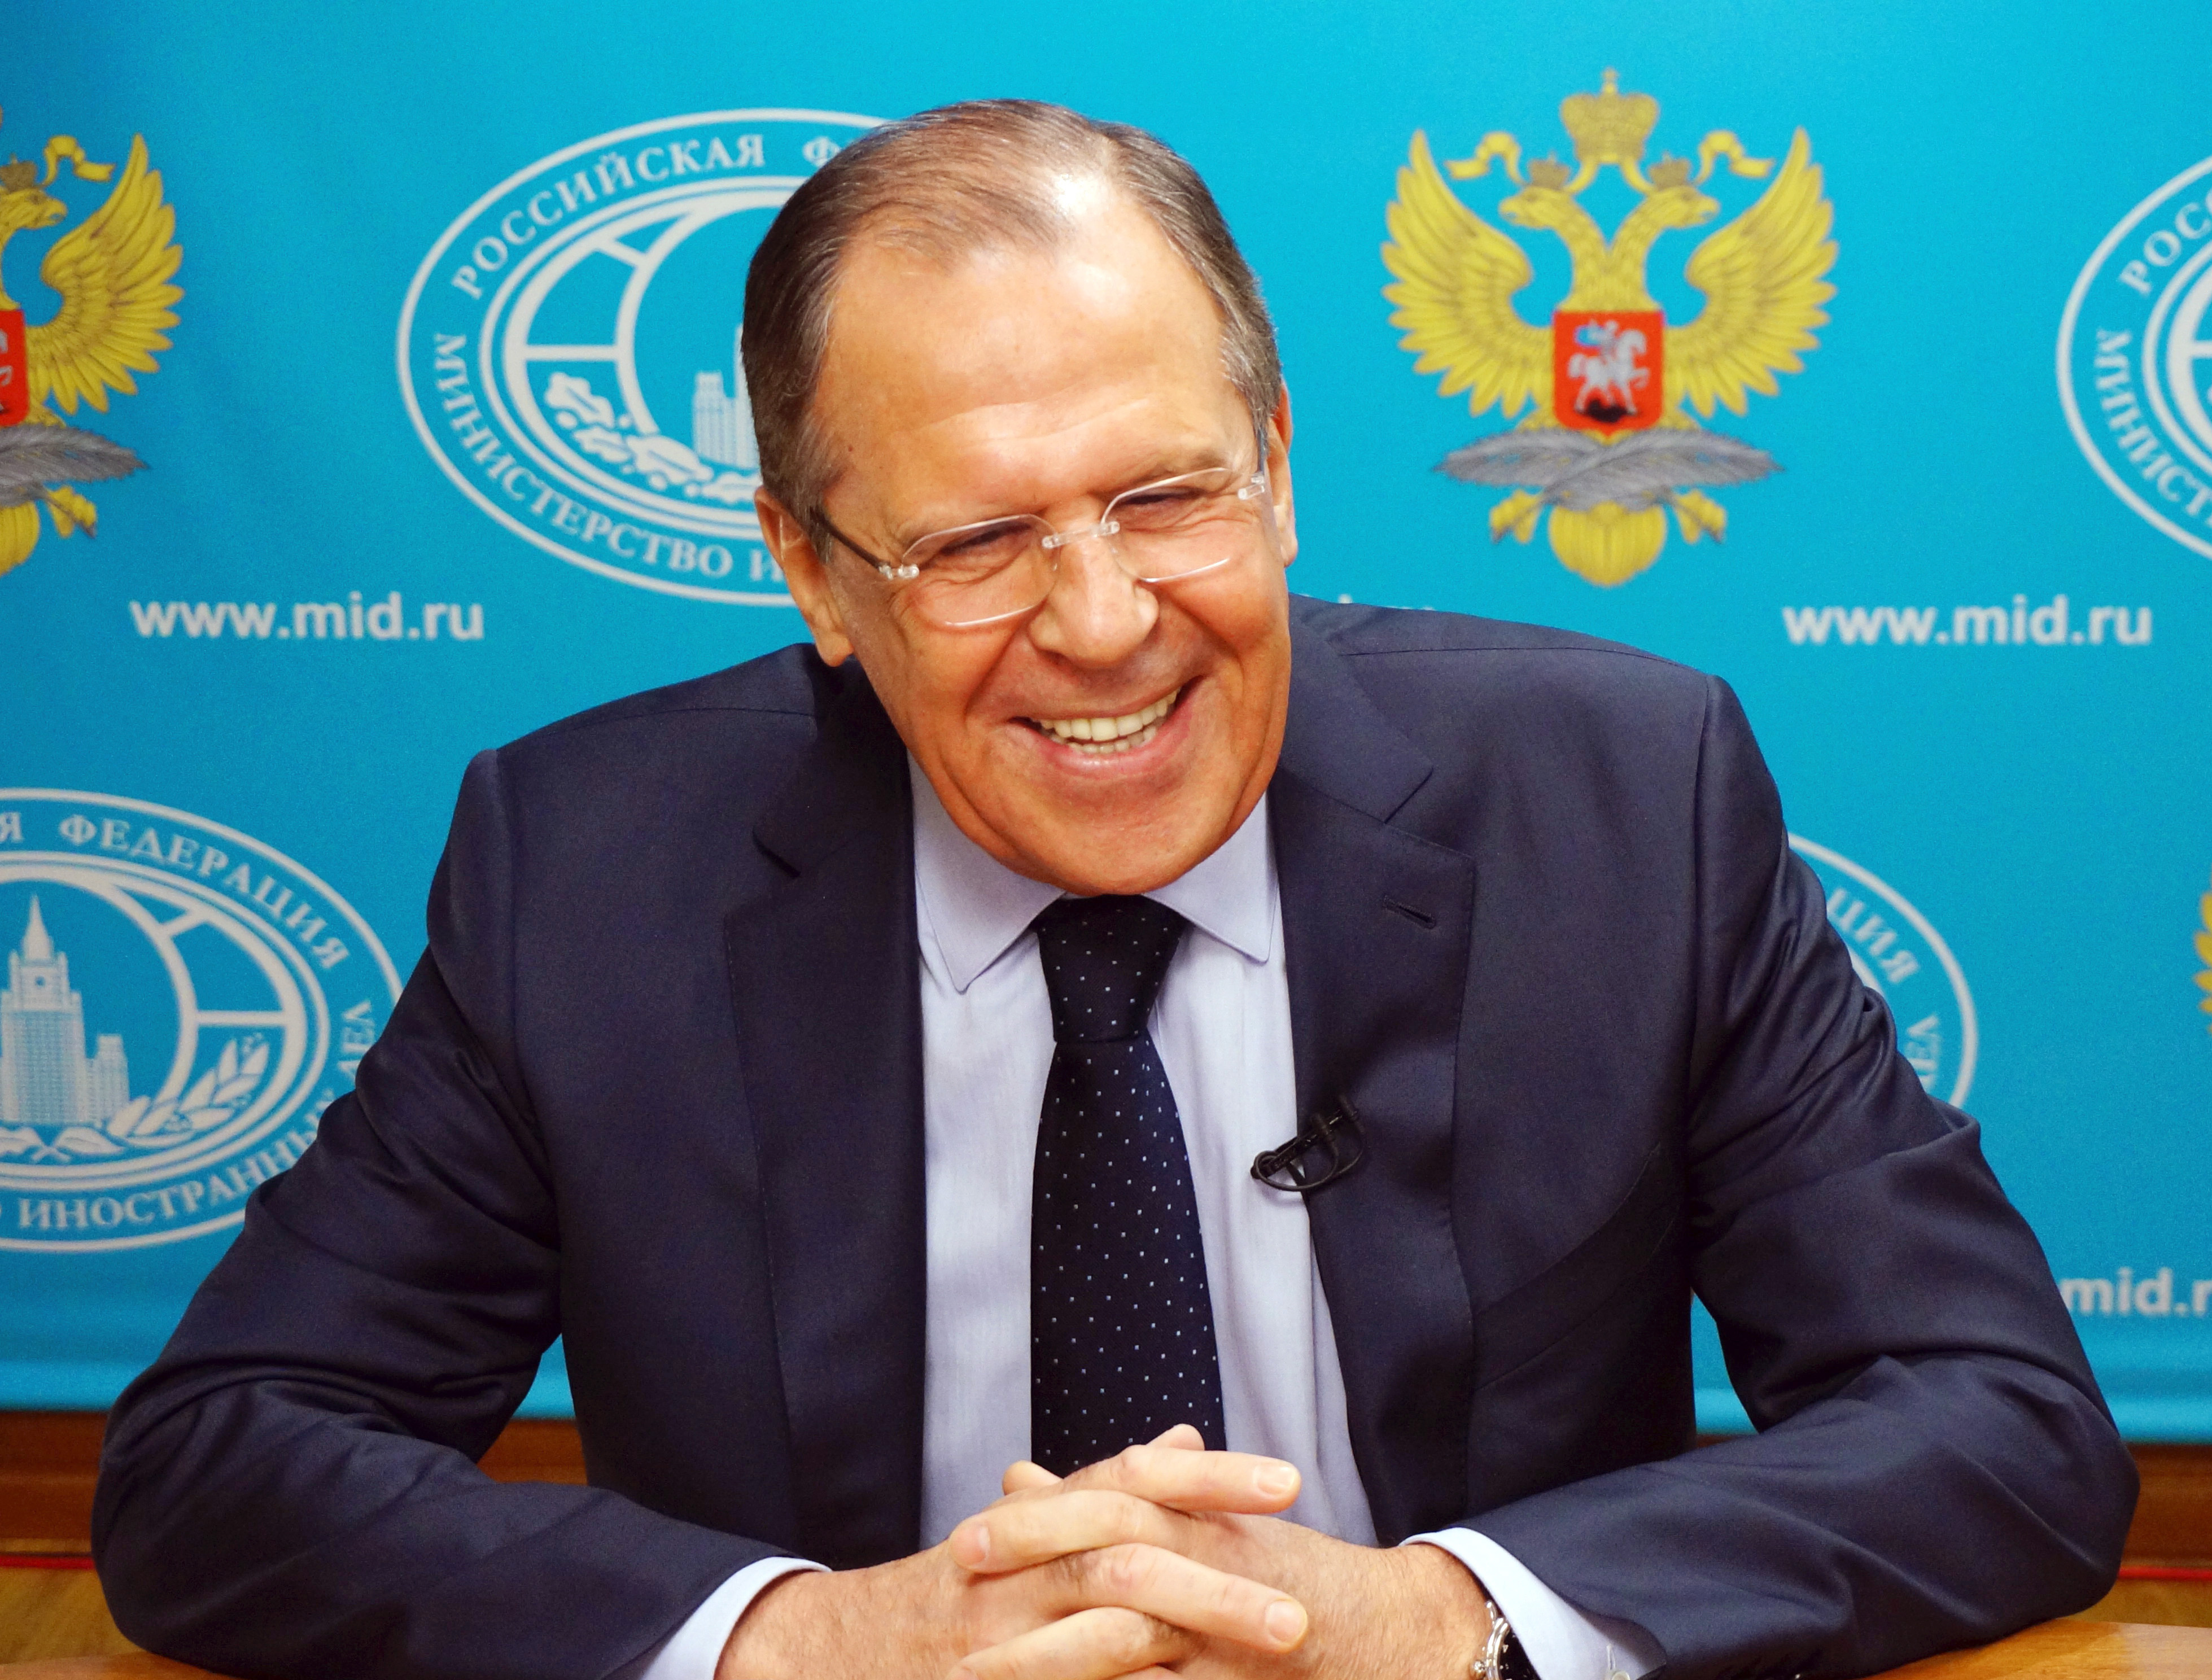 Menurut Menteri Luar Negeri Rusia Sergey Lavrov, kerja sama dengan ASEAN “telah menjadi salah satu prioritas utama” kebijakan luar negeri Rusia.